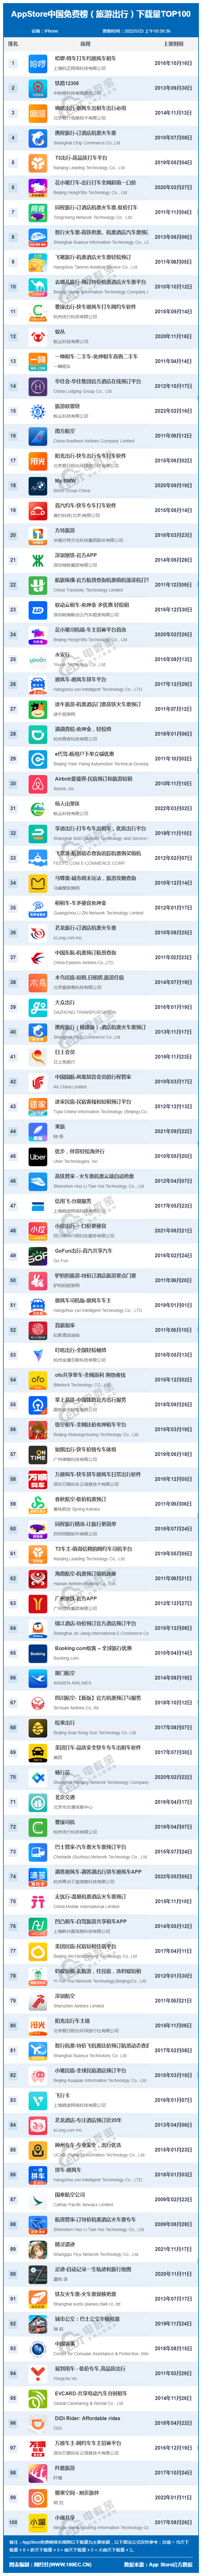 5月AppStore中国免费榜(旅游出行)TOP100 ：哈啰 铁路12306居前二